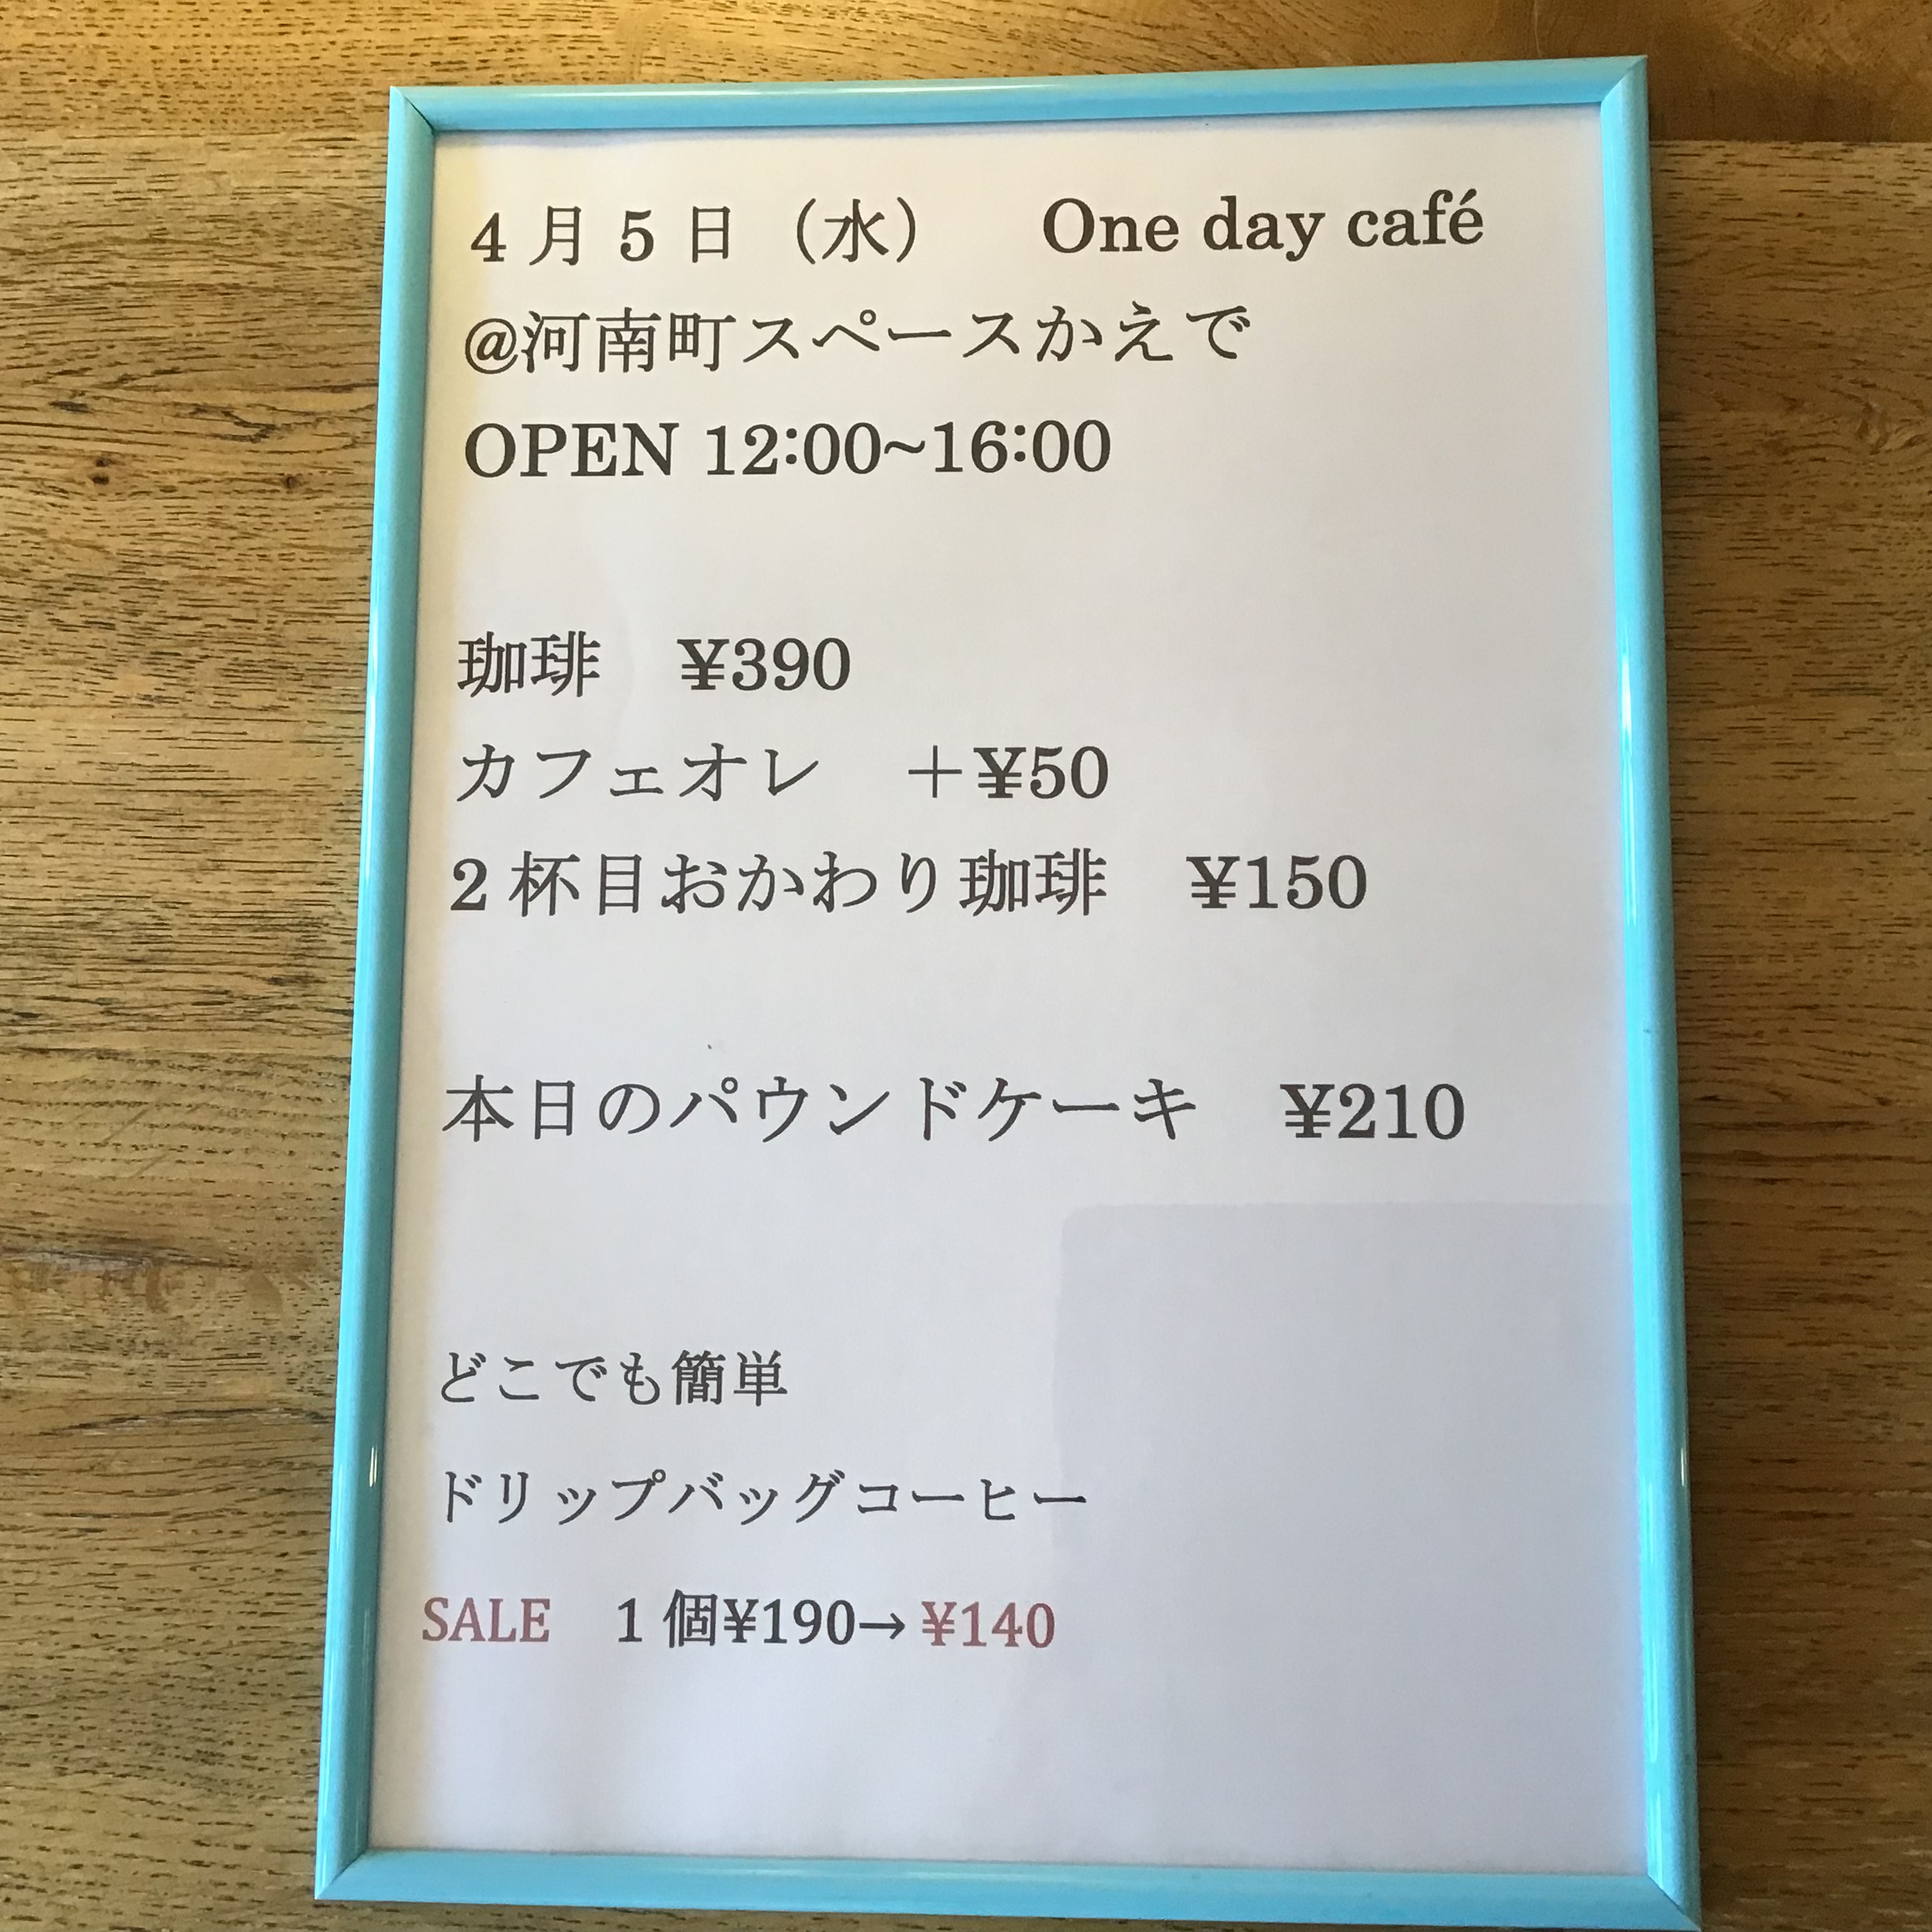 『4月5日河南町One Day Cafe』のお知らせ